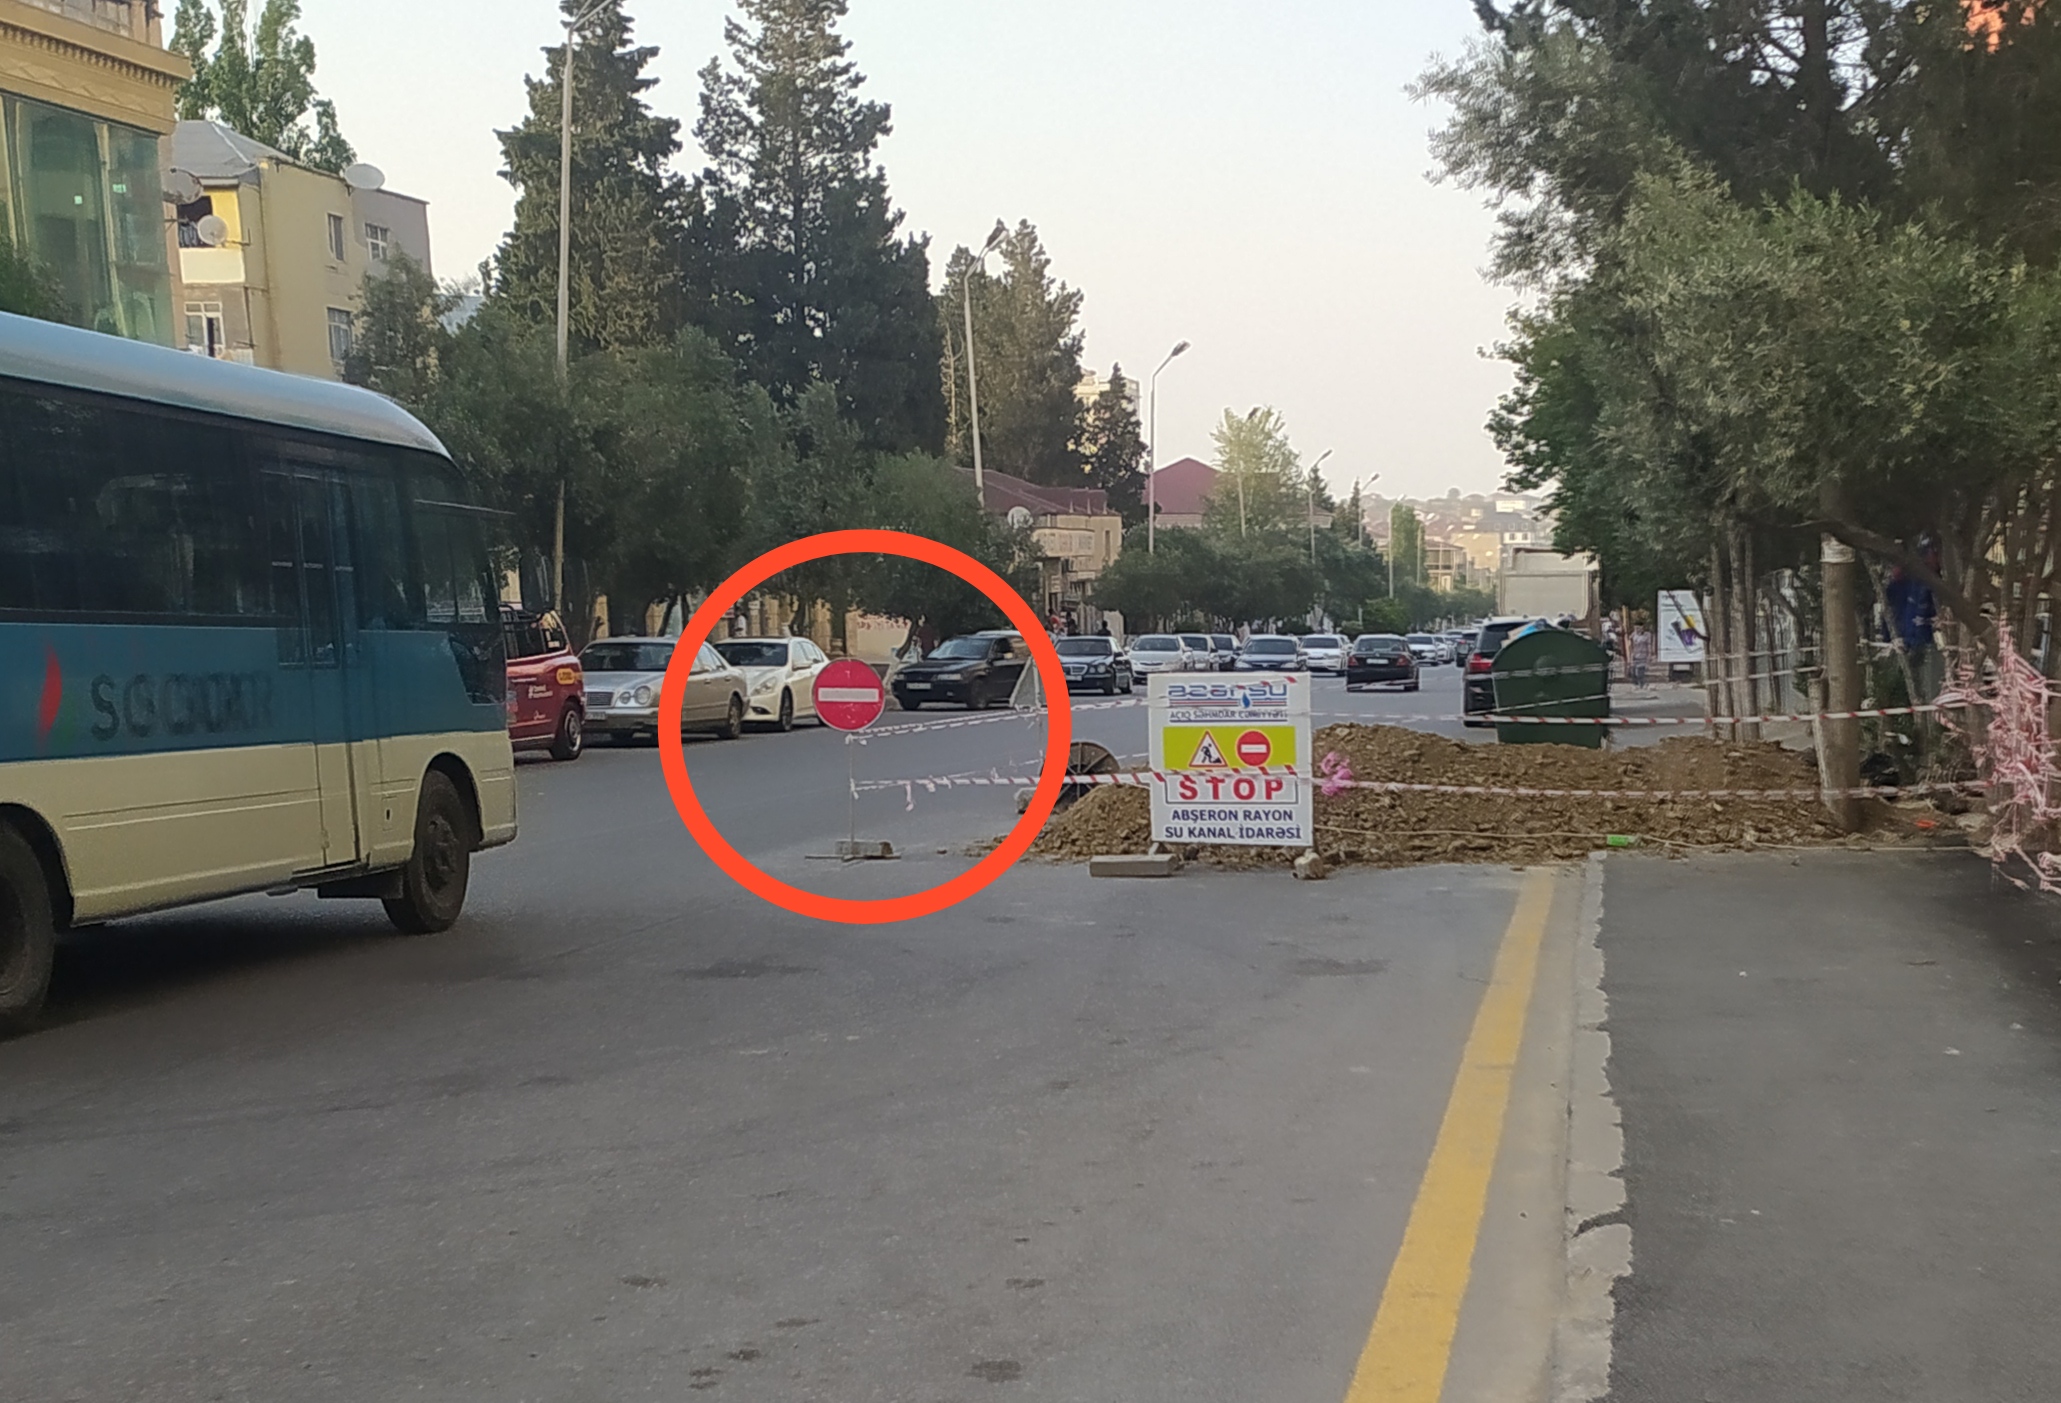 Azərsu qazdığı yola səhv nişan quraşdırıb sürücüləri çaşdırdı - FOTO